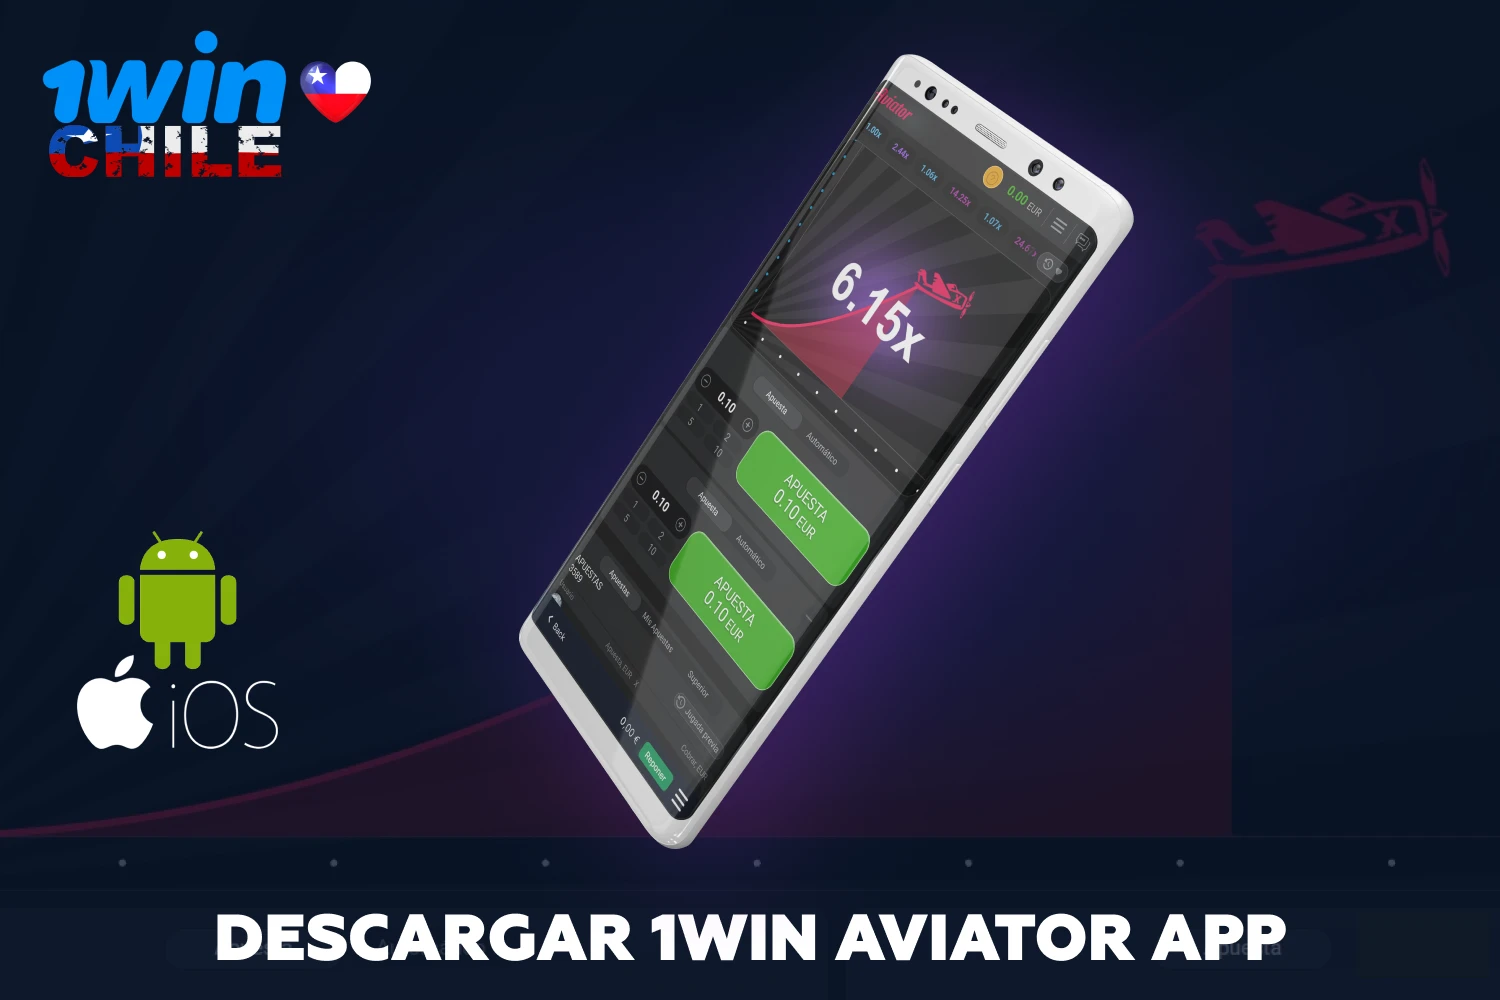 Los chilenos a los que les guste apostar en su smartphone tienen la opción de descargarse la app de alta calidad 1win Aviator